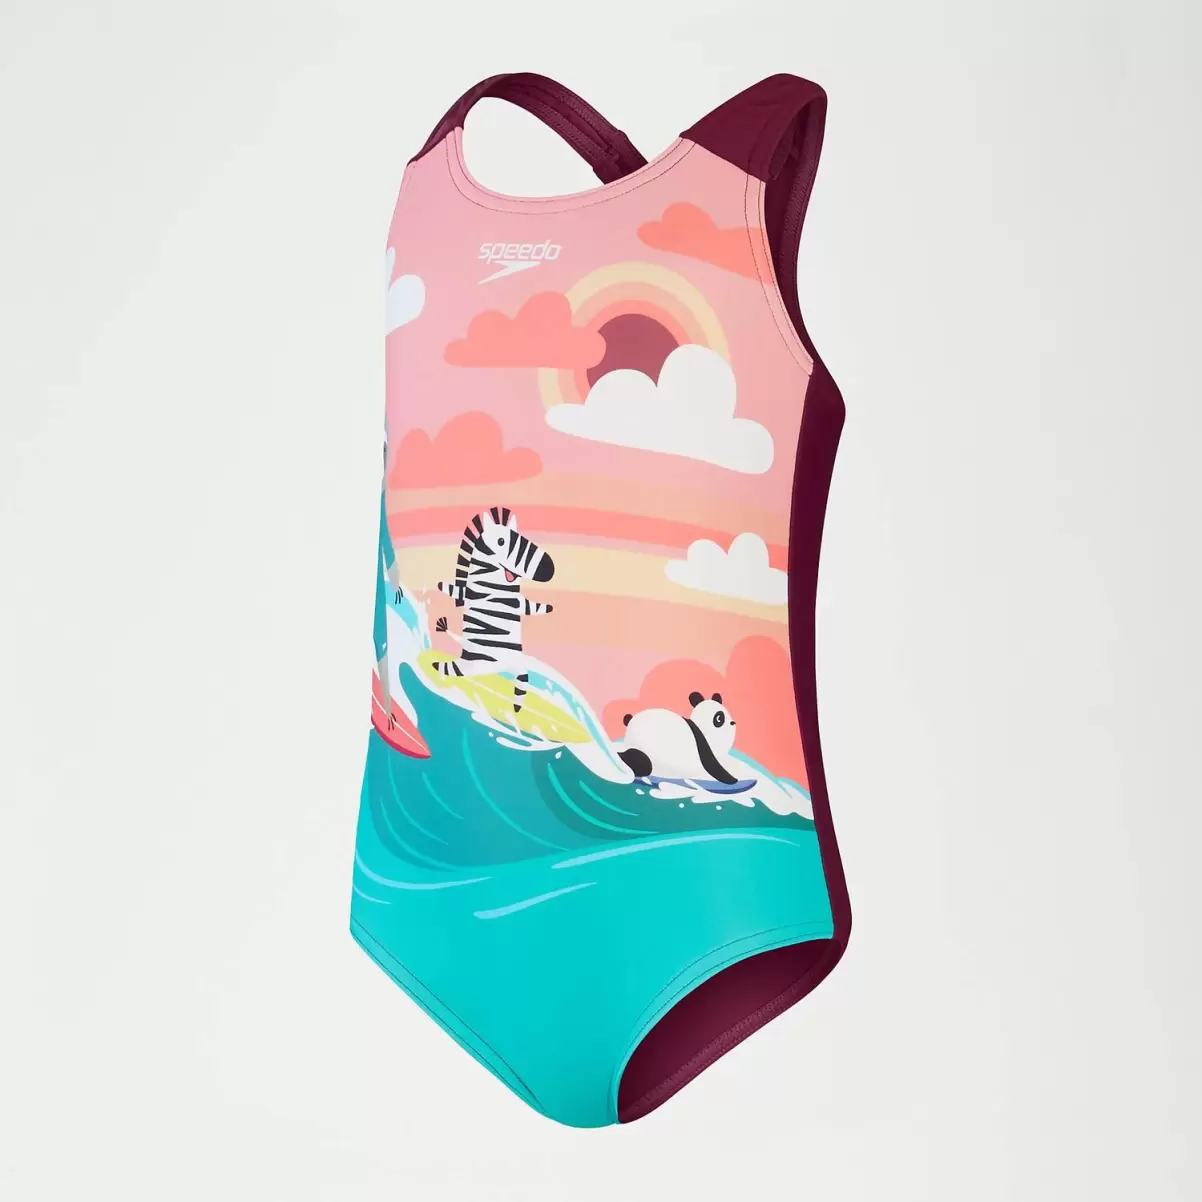 Kinder Bedruckter Badeanzug Für Mädchen Im Kleinkindalter Pink/Koralle Speedo Mädchen Bademode - 3